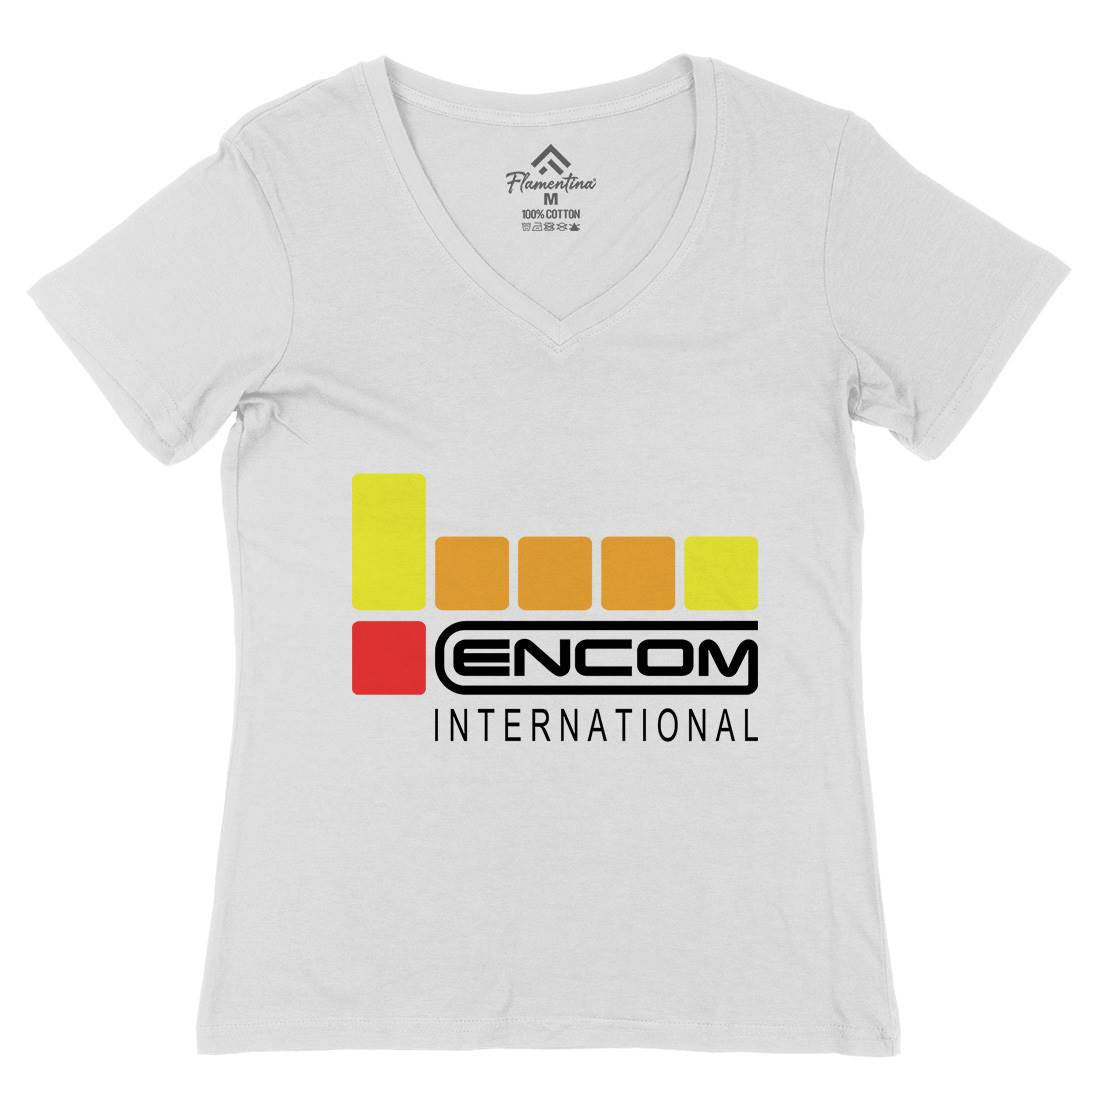 Encom Womens Organic V-Neck T-Shirt Space D155